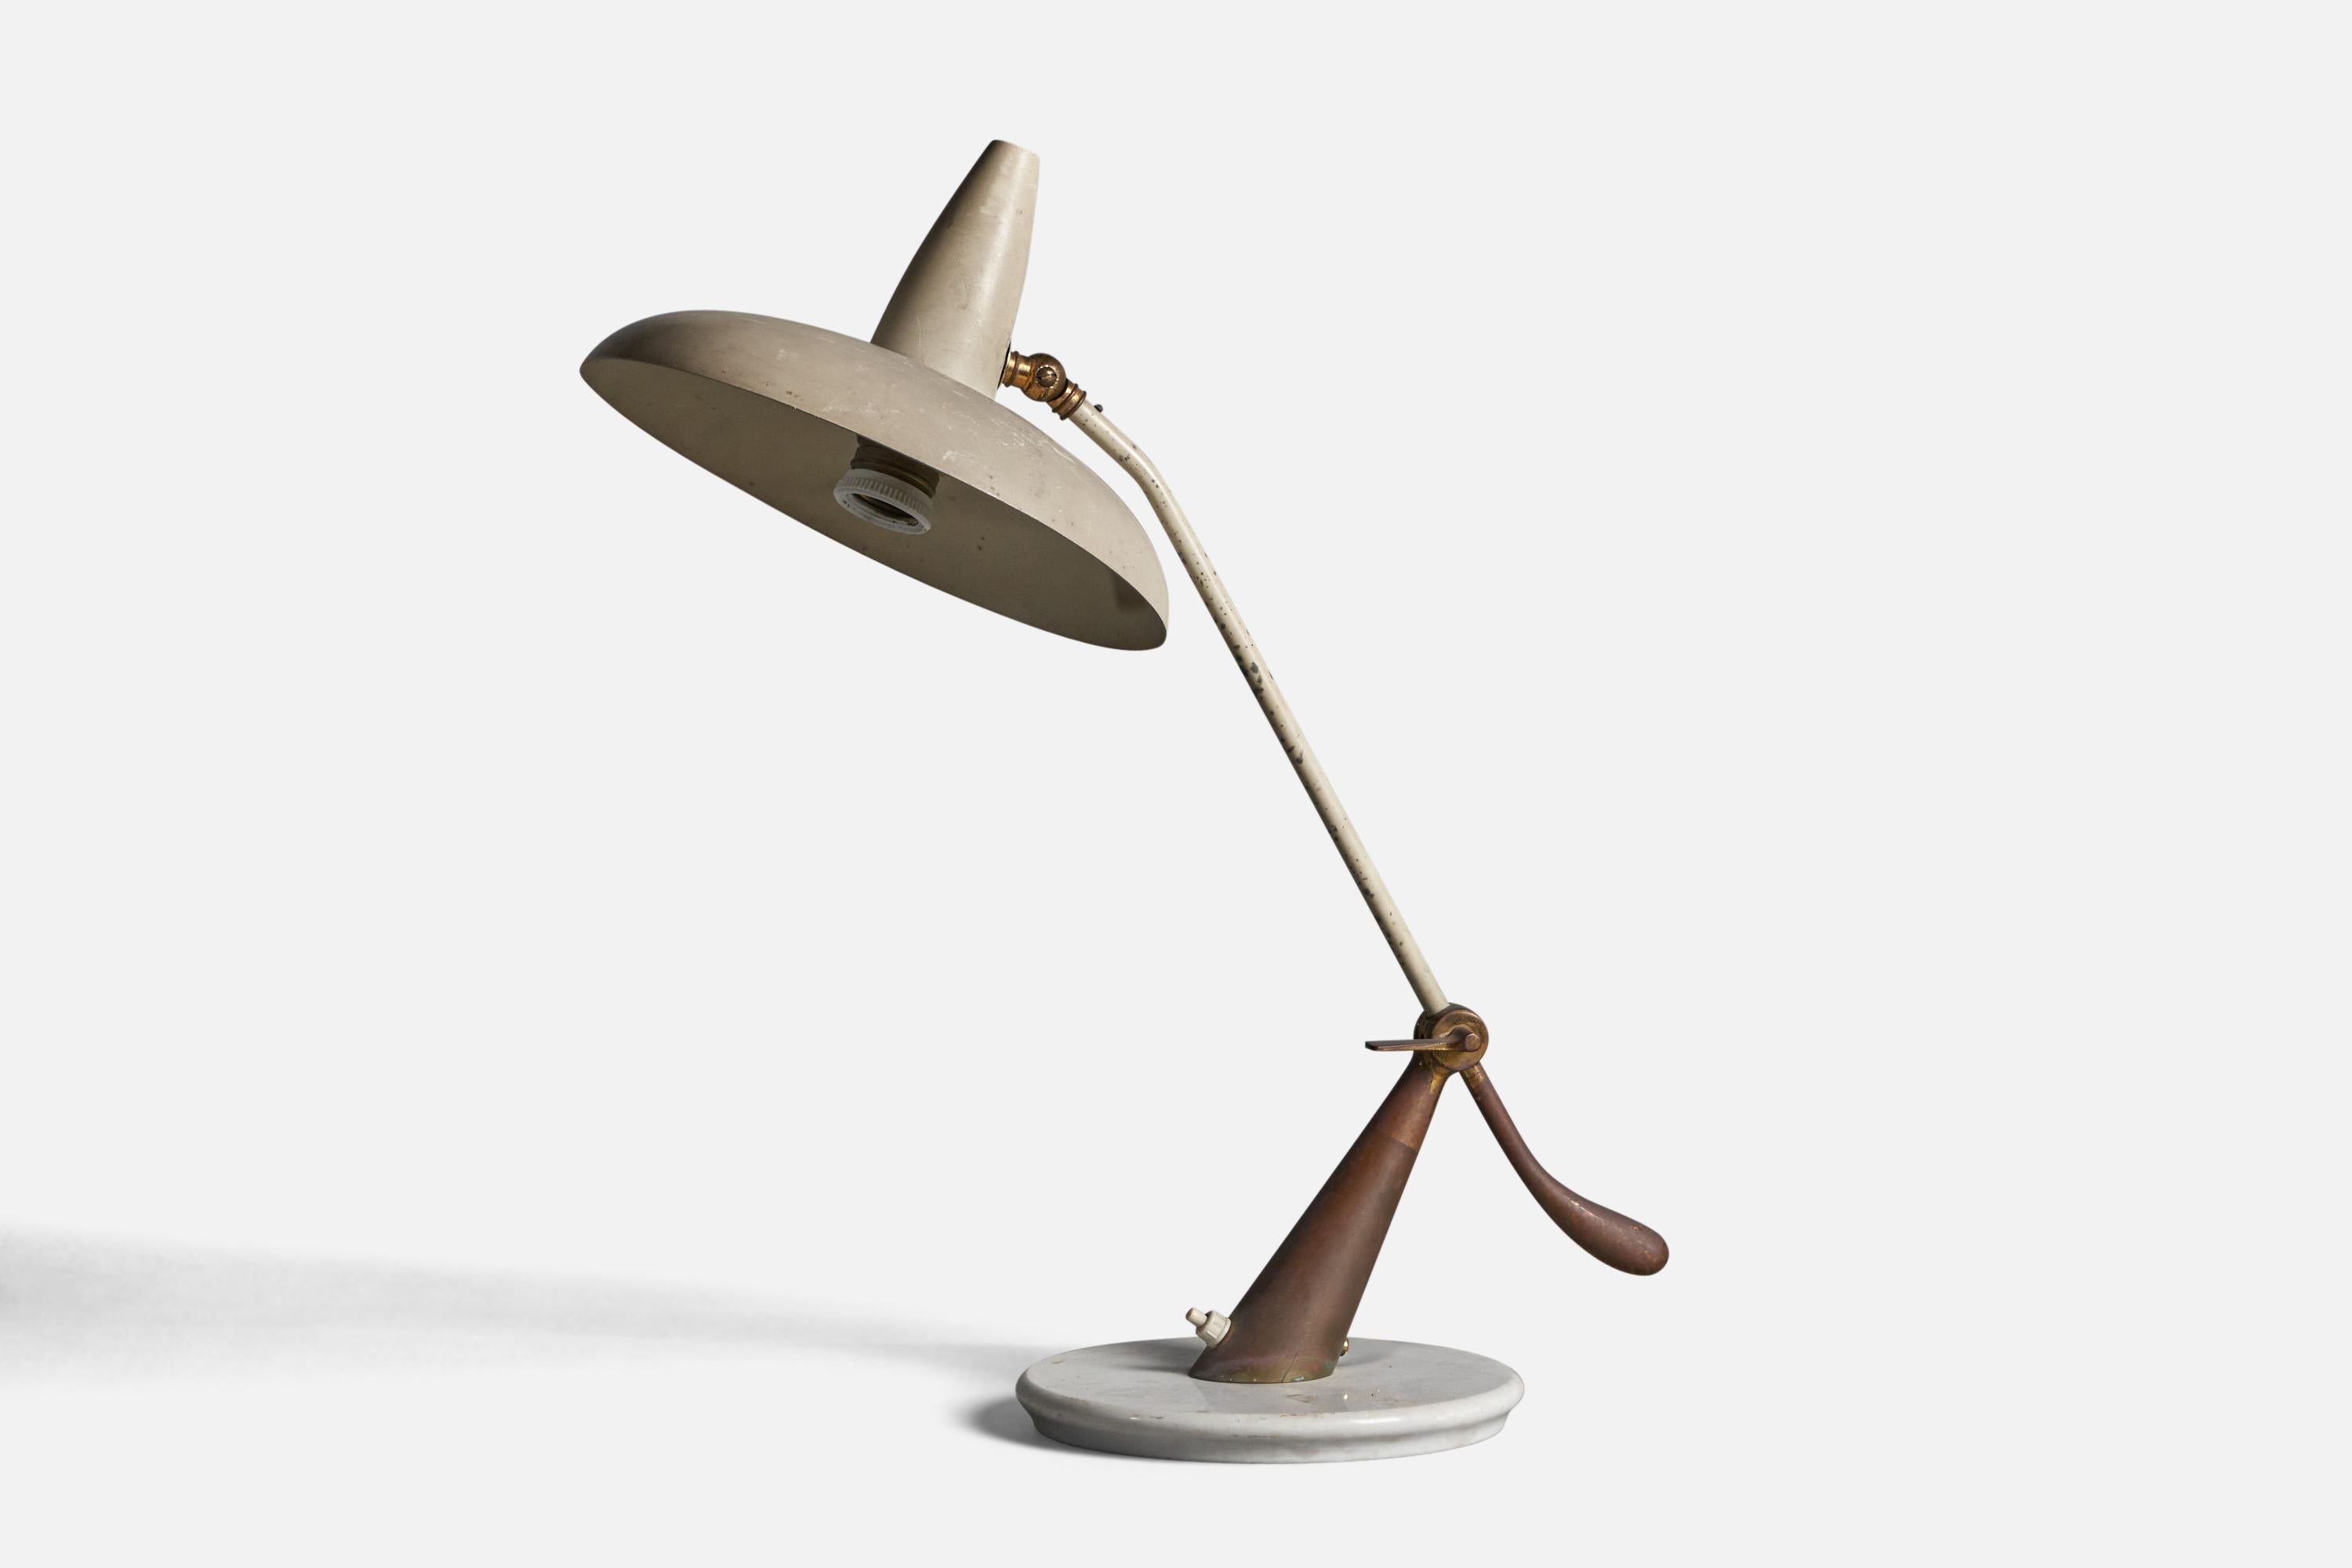 Lampe de table réglable en laiton, métal et marbre, conçue et produite en Italie, C.C. 1940.

Dimensions globales (pouces) : 20